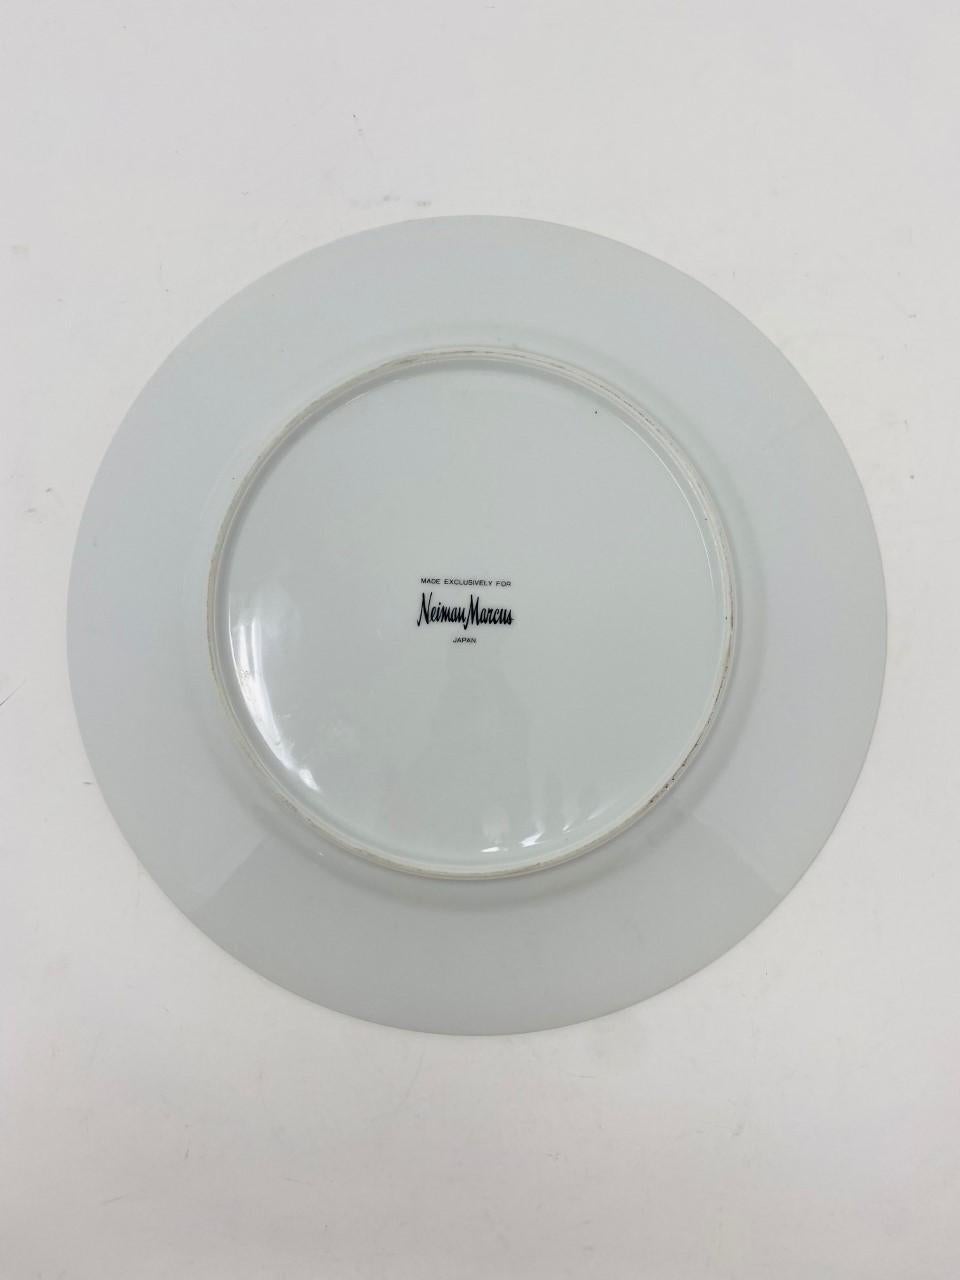 Service iconique de porcelaine de Chine en malachite. Ce set de 10 assiettes comprend 2 assiettes plates, 4 assiettes à salade et 4 assiettes à dessert. Le glamour des années 1970 à votre table. Ce service de porcelaine n'est pas seulement beau, il